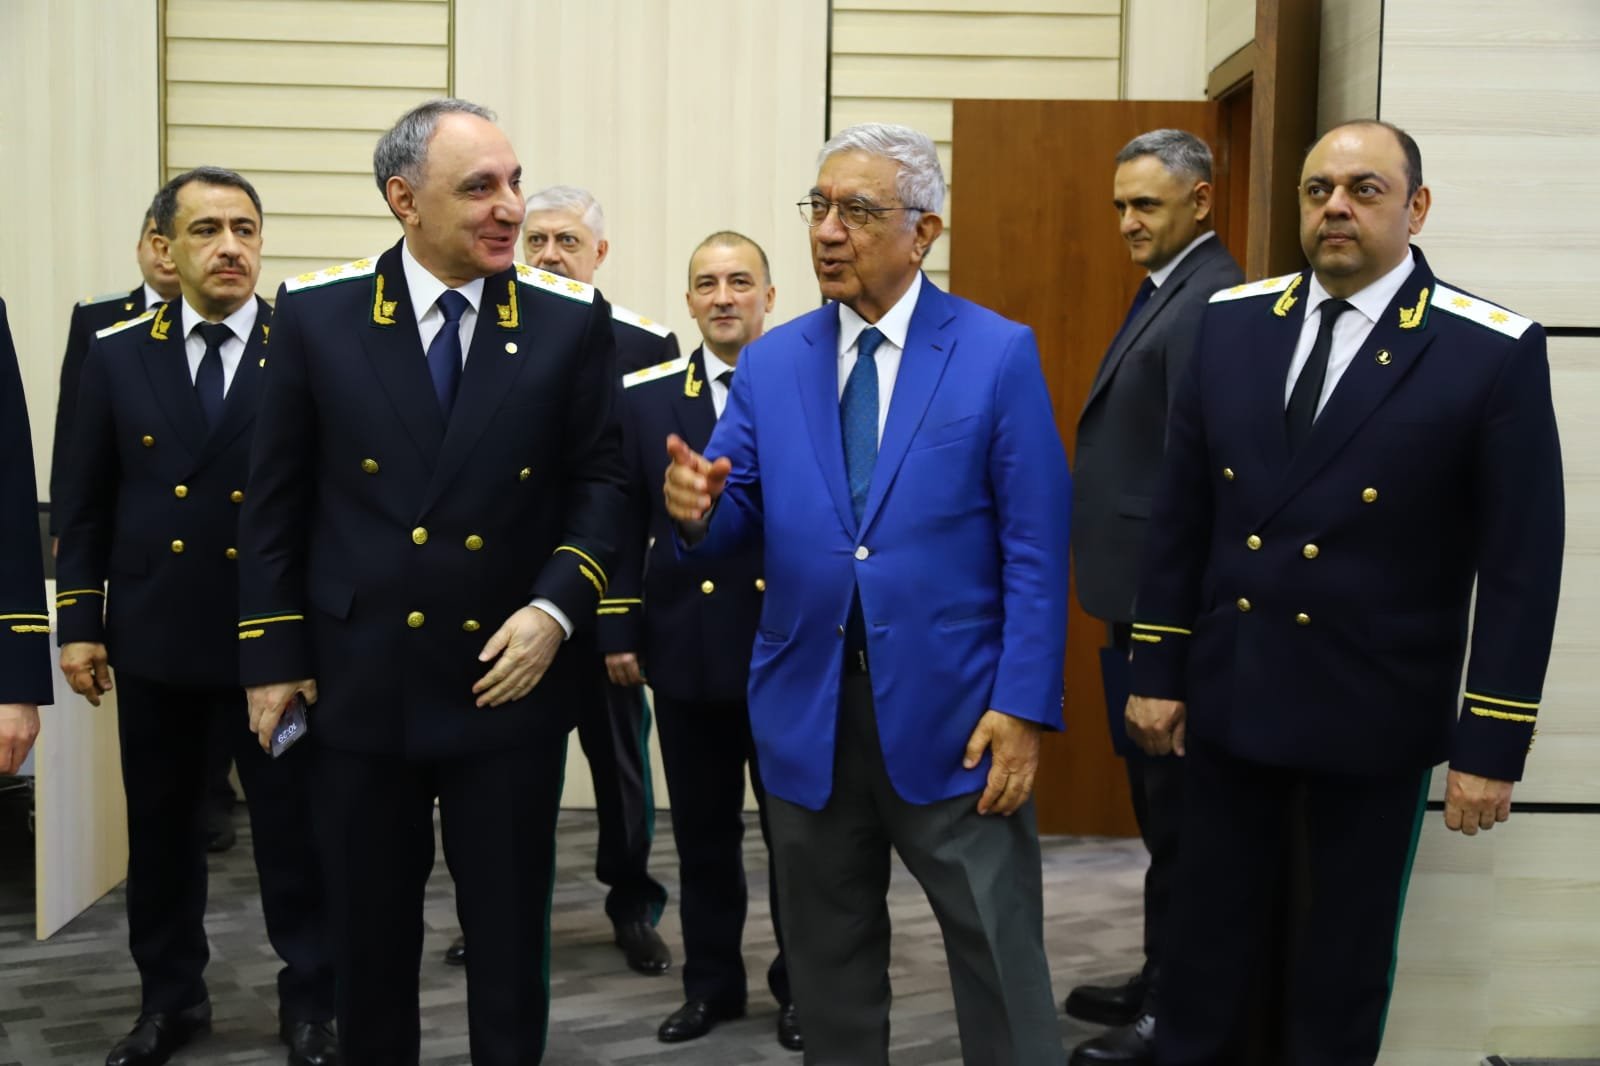 В Азербайджане проходит церемония принесения присяги сотрудниками, принятыми на службу в органы прокуратуры (ФОТО)